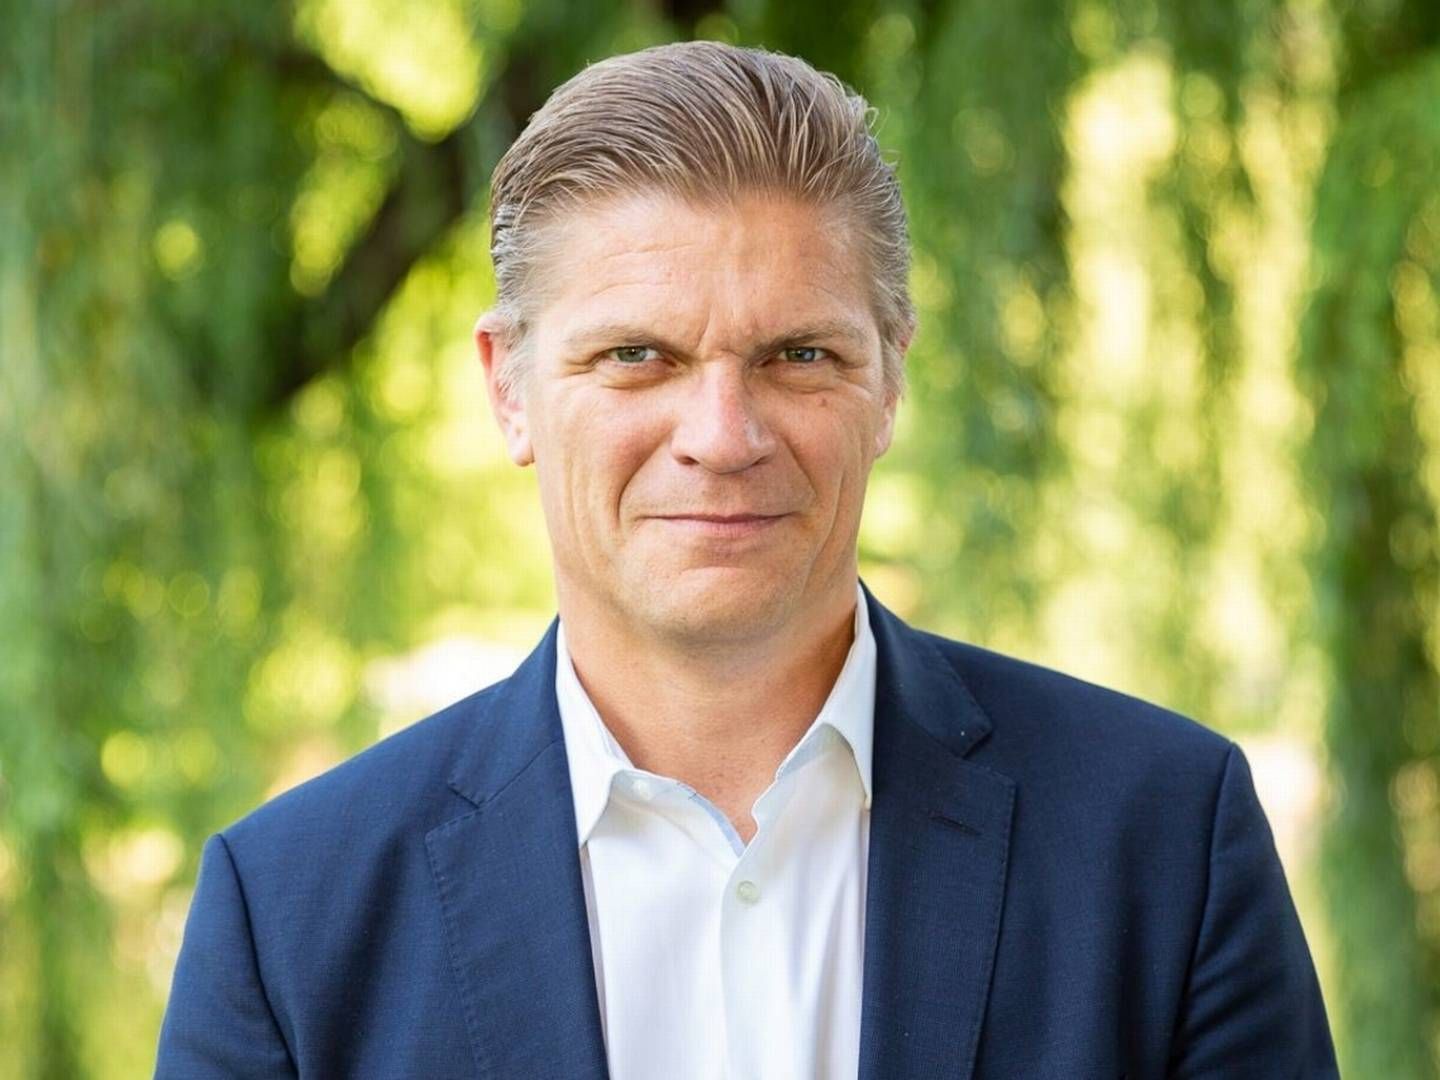 Chefen for europæiske markeder hos Nasdaq, Bjørn Sibbern, stopper ved årsskiftet. | Foto: Nasdaq/PR